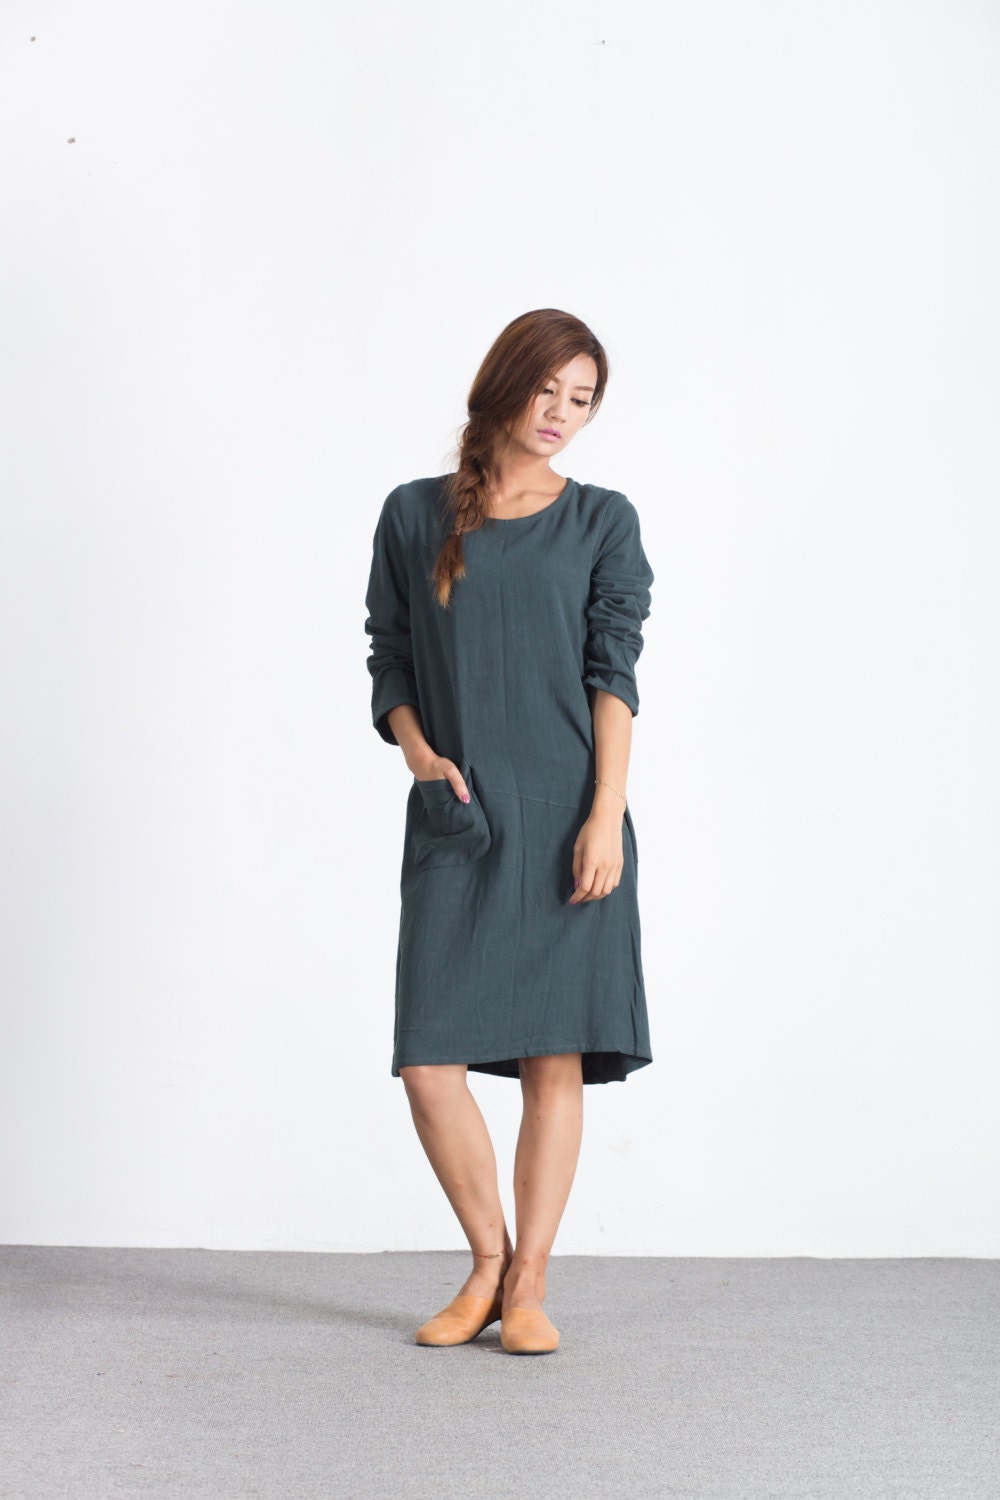 Linen Dresses for Women Long Sleeve Knee Length Dress Short | Etsy